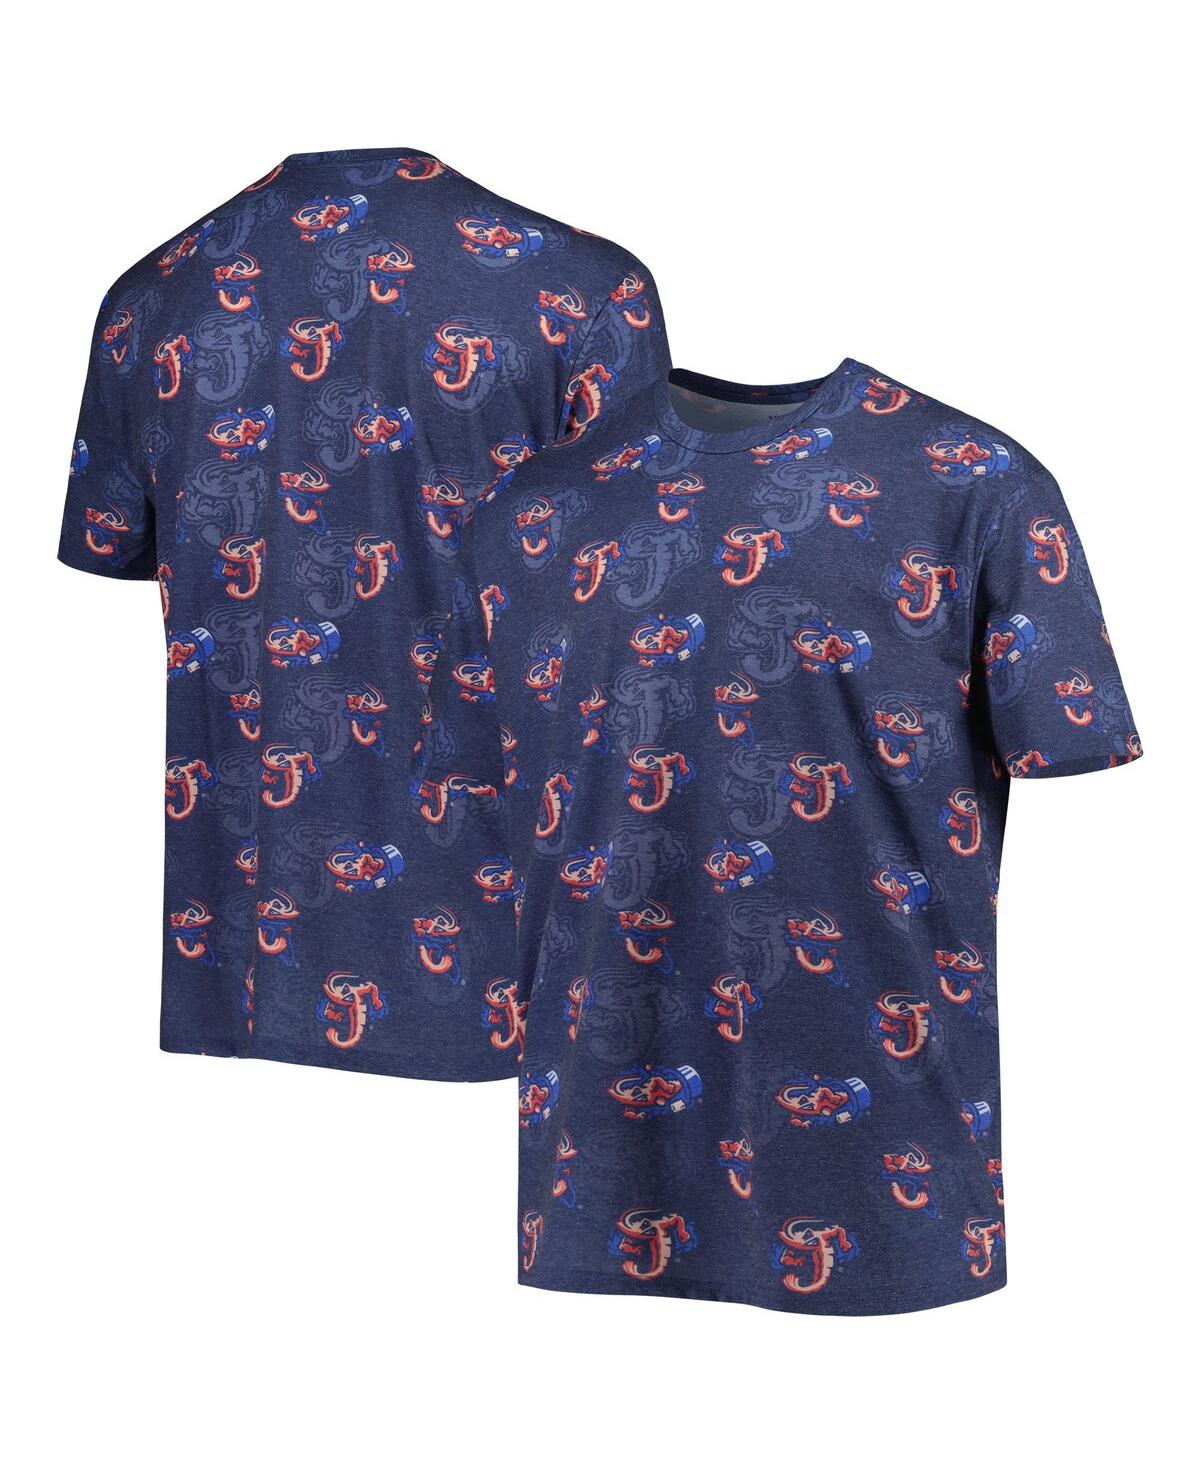 Men's Navy Jacksonville Jumbo Shrimp Allover Print Crafted T-shirt - Navy